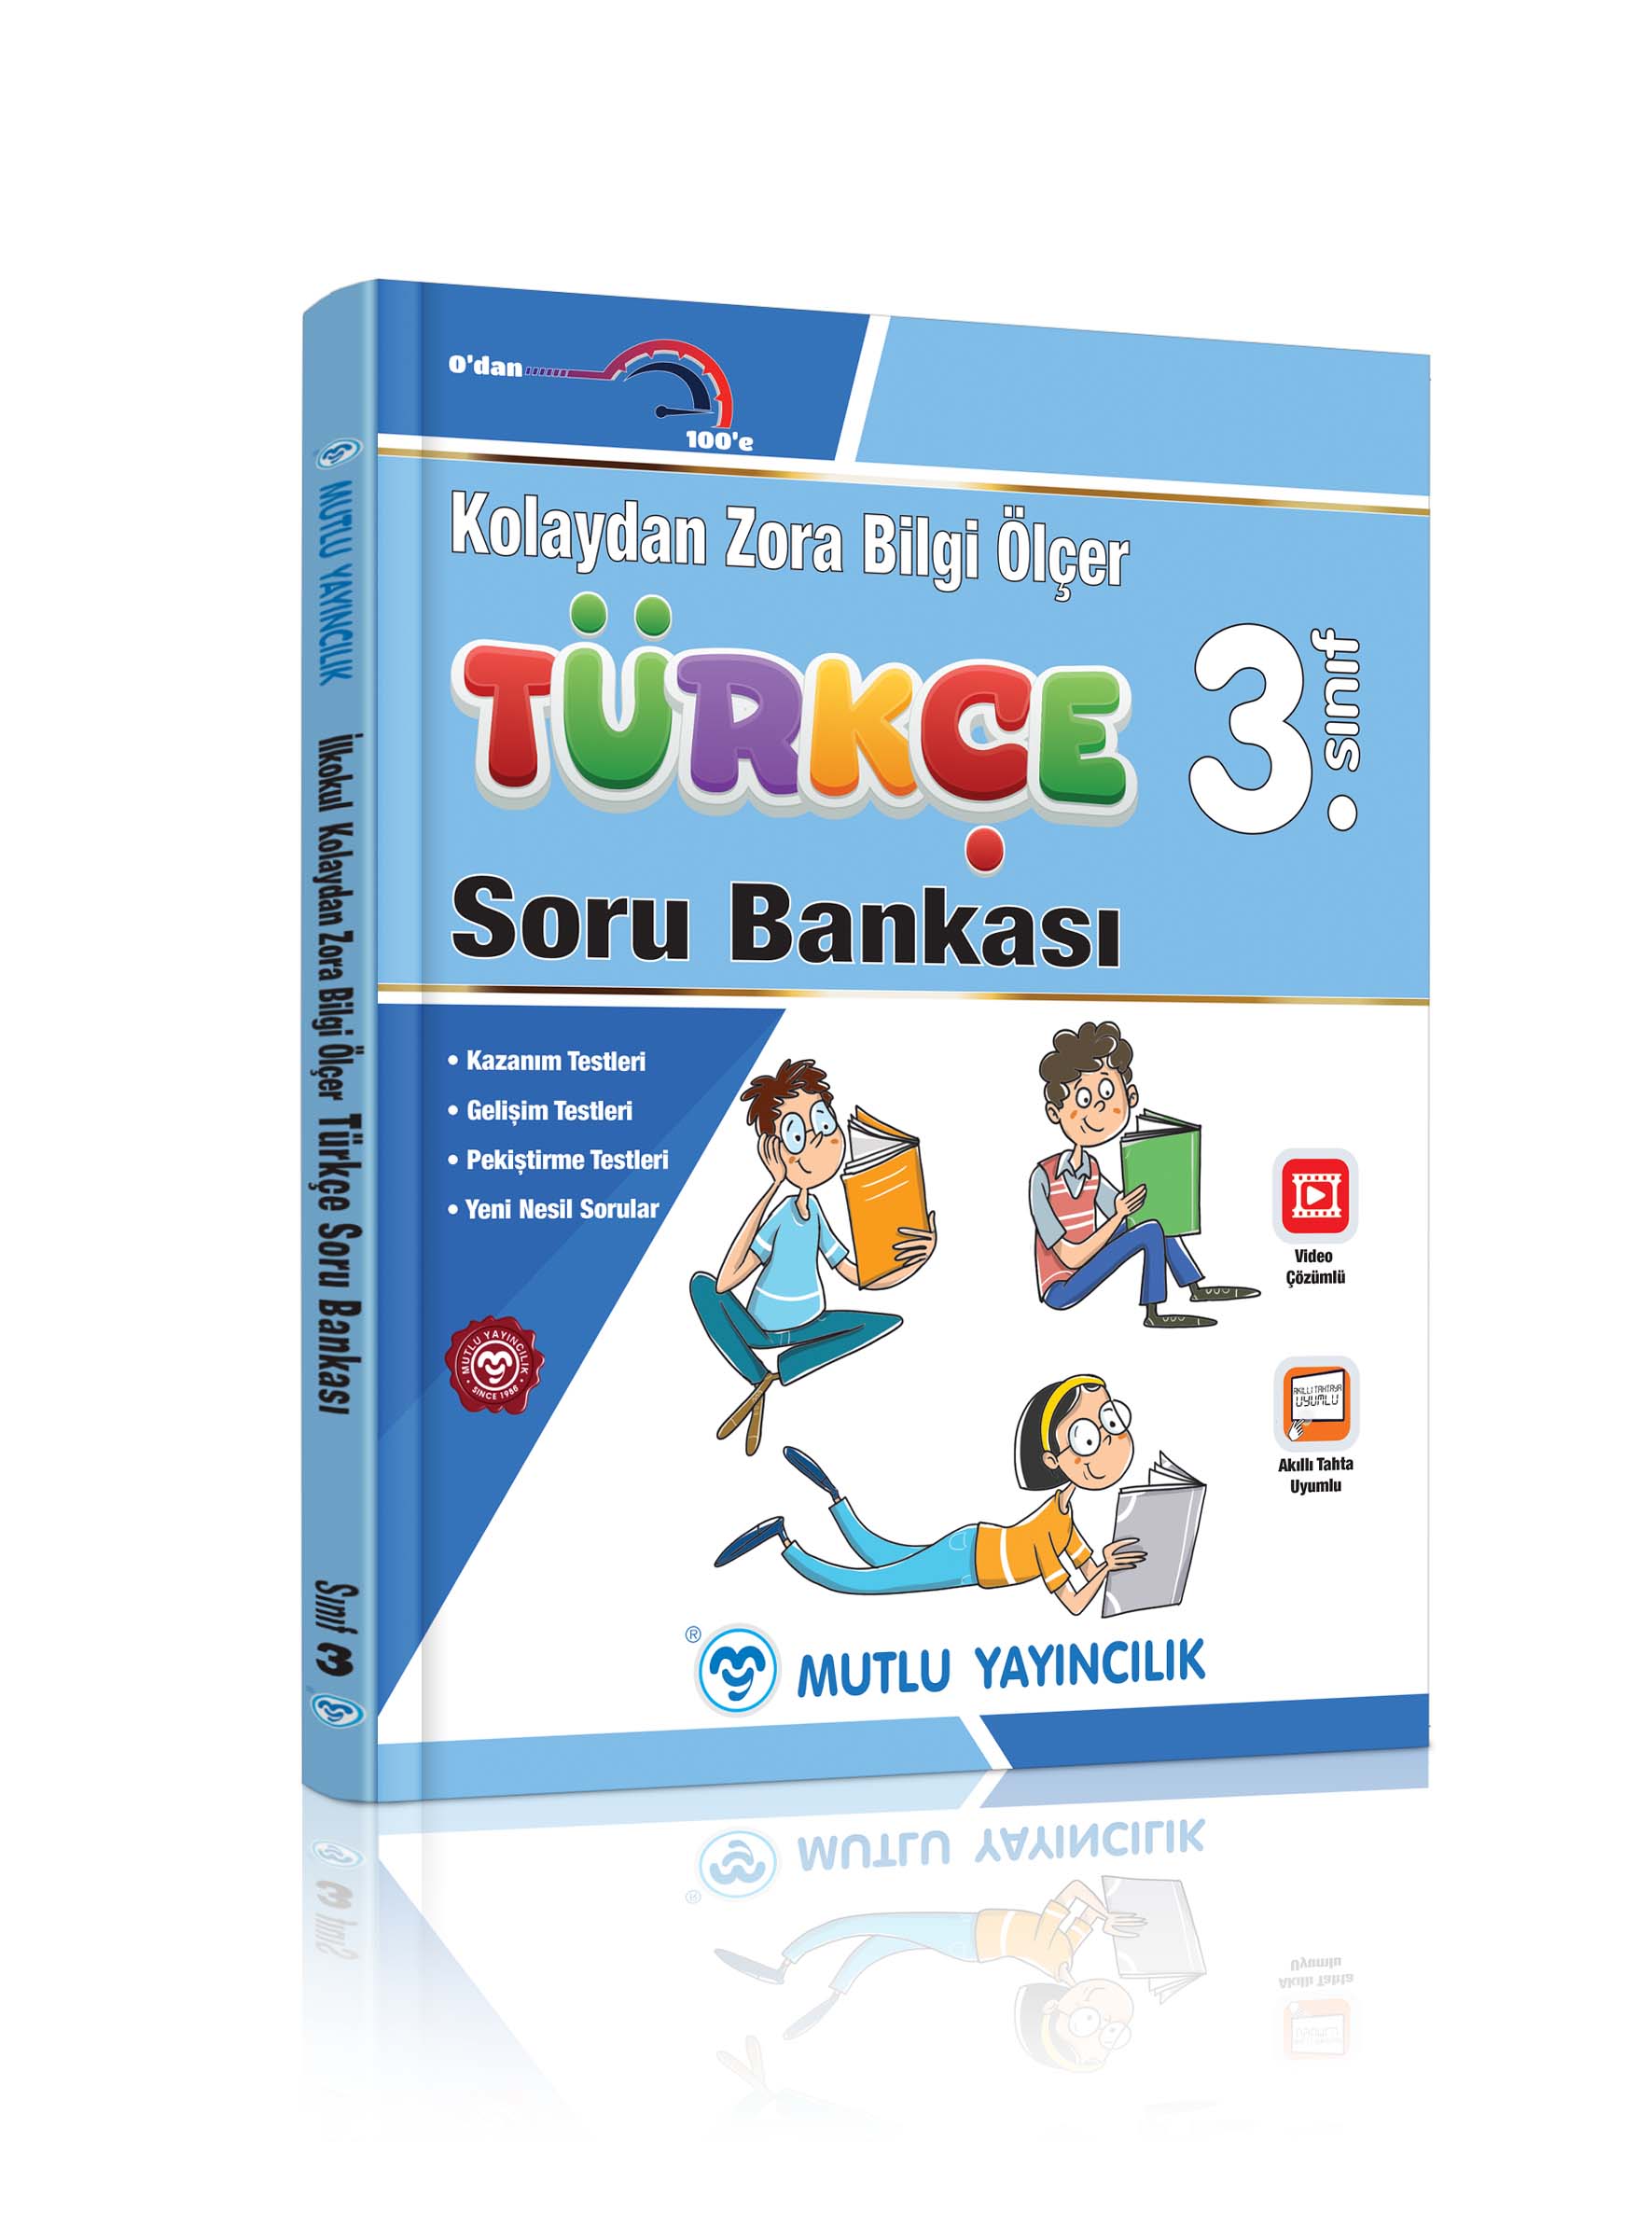 3 sınıf turkce bilgi olcer 3d